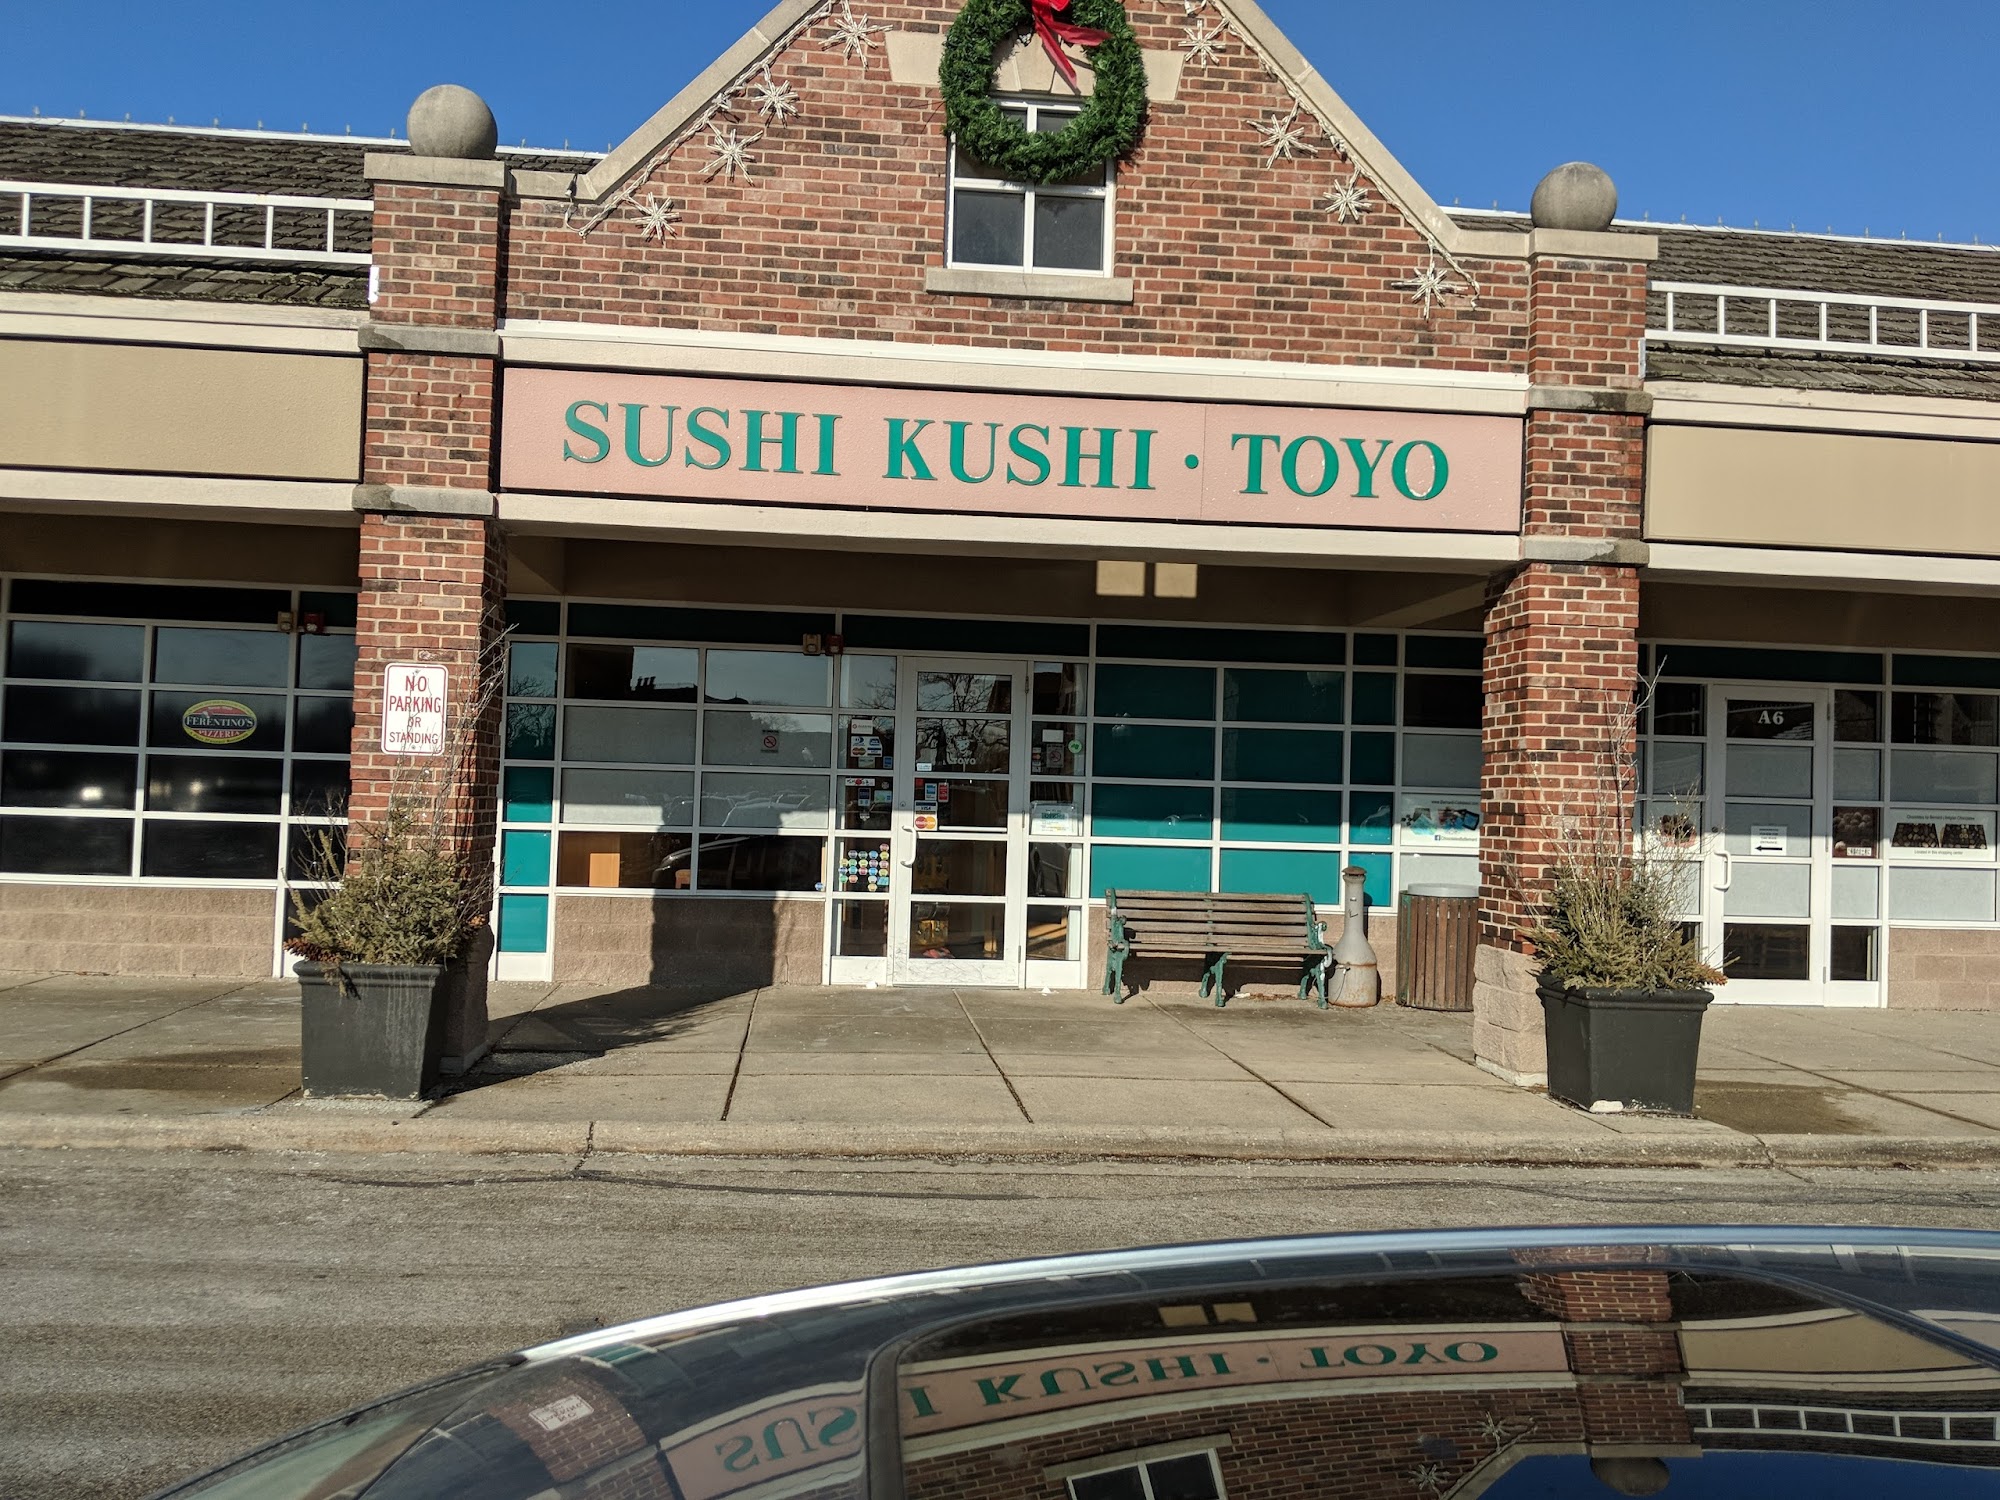 Sushi Kushi Toyo